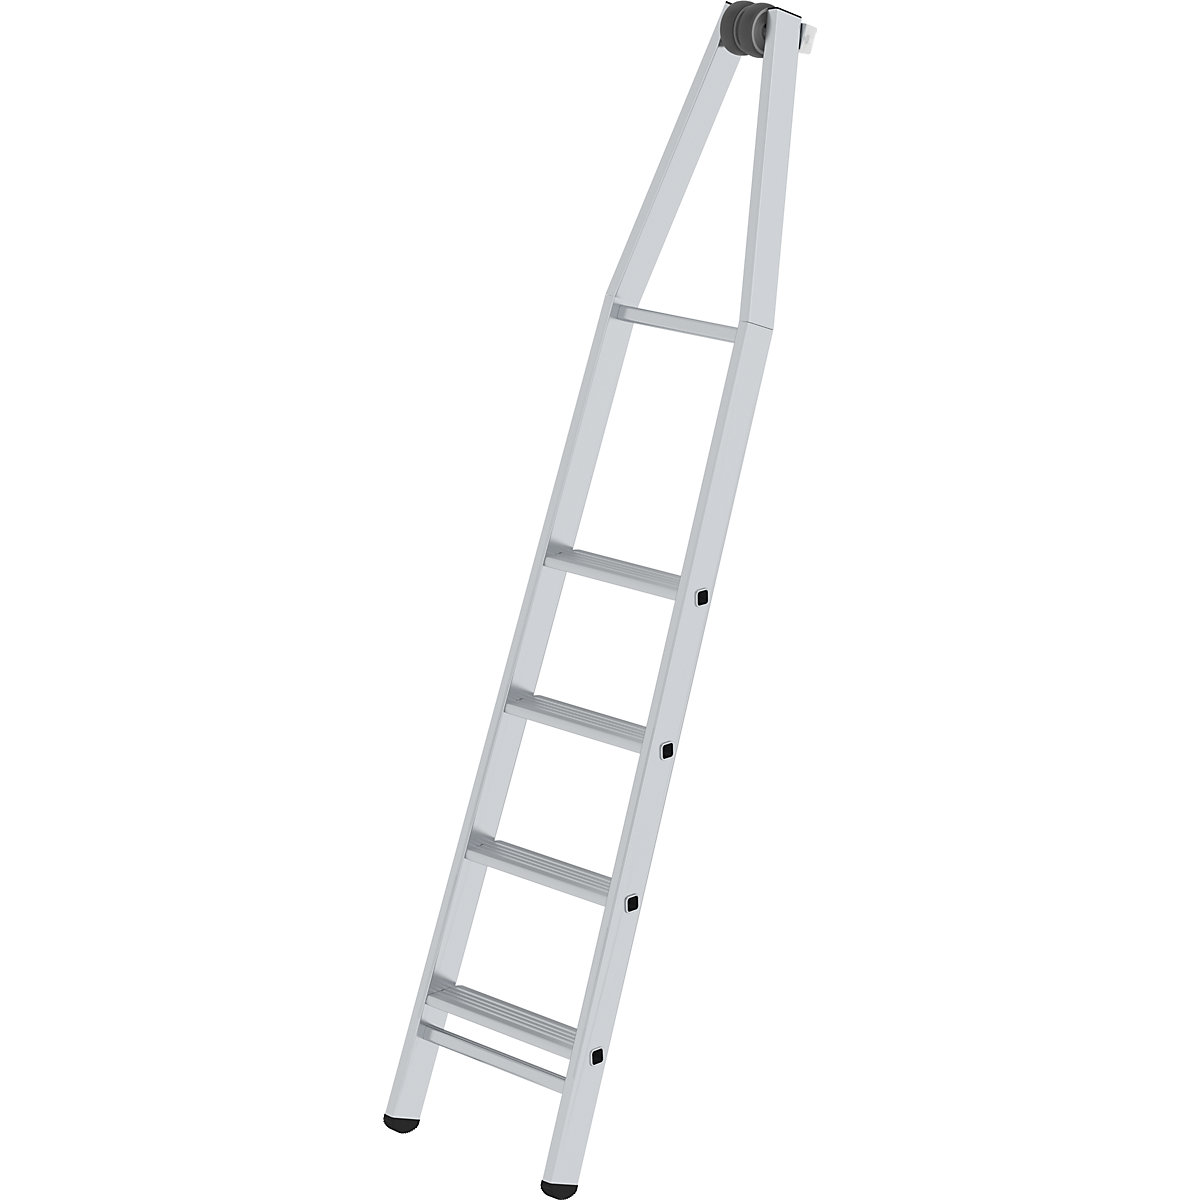 Rebrík so stupňami na čistenie okien - MUNK